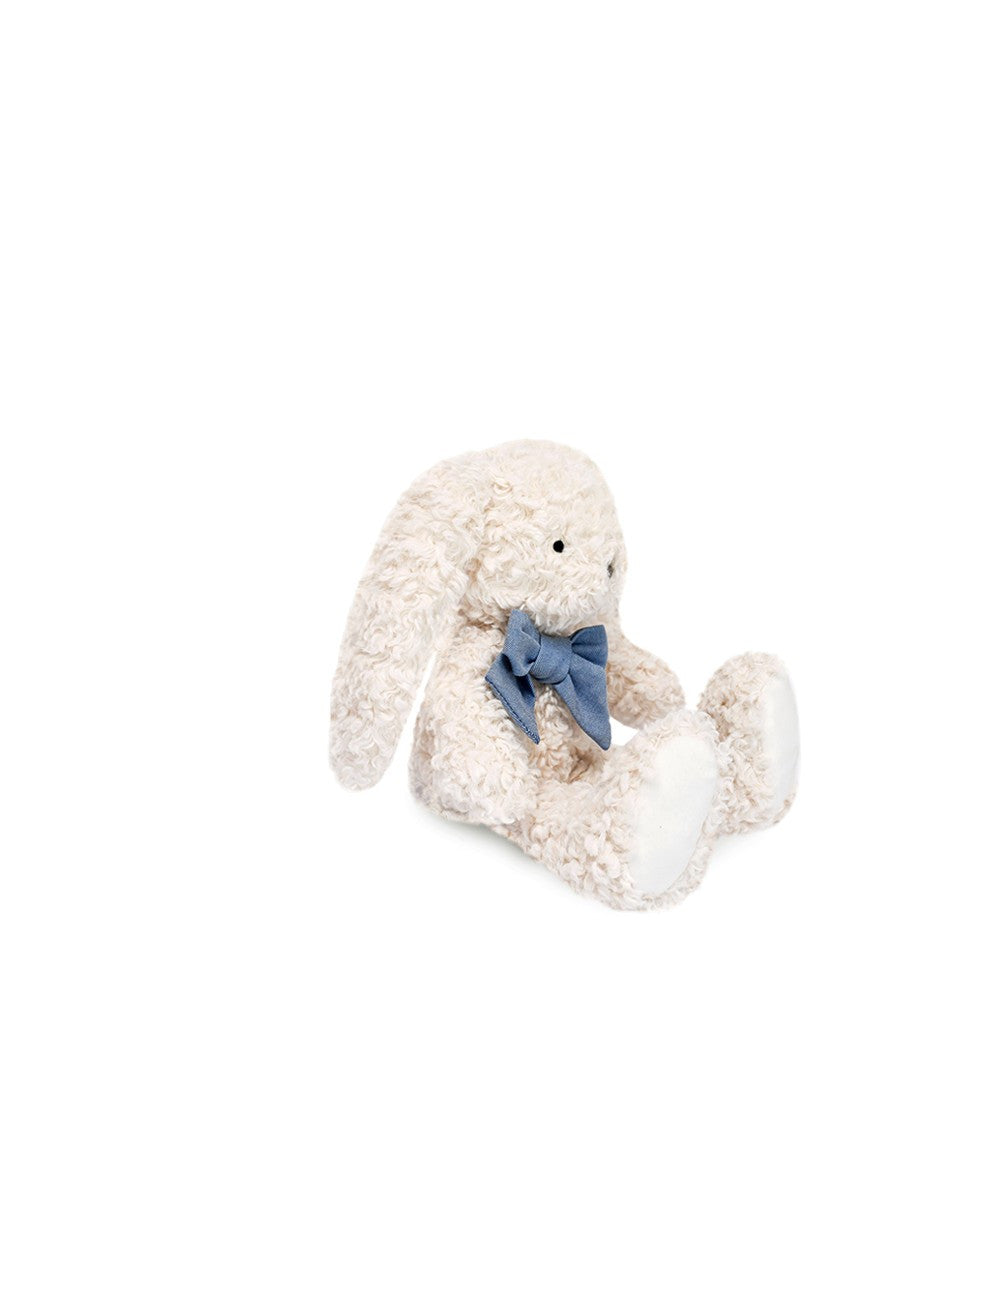 Peluche Pilou le lapin et son joli nœud bleu jean - Made in France